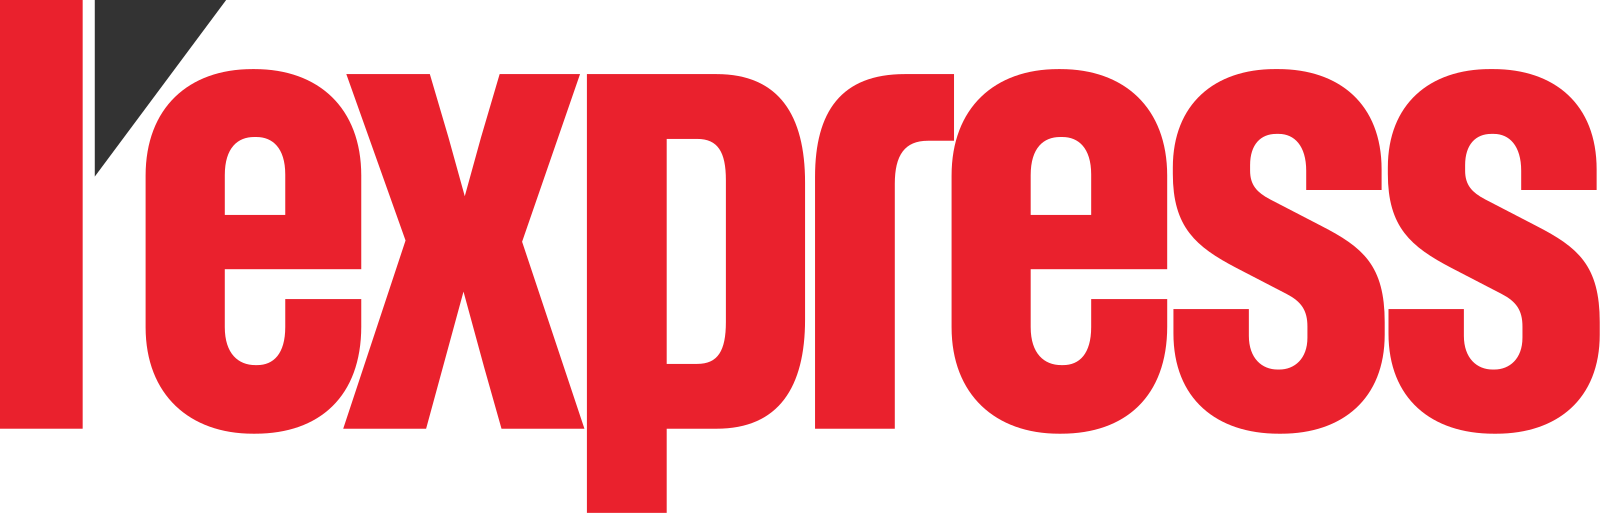 lexpress_logo